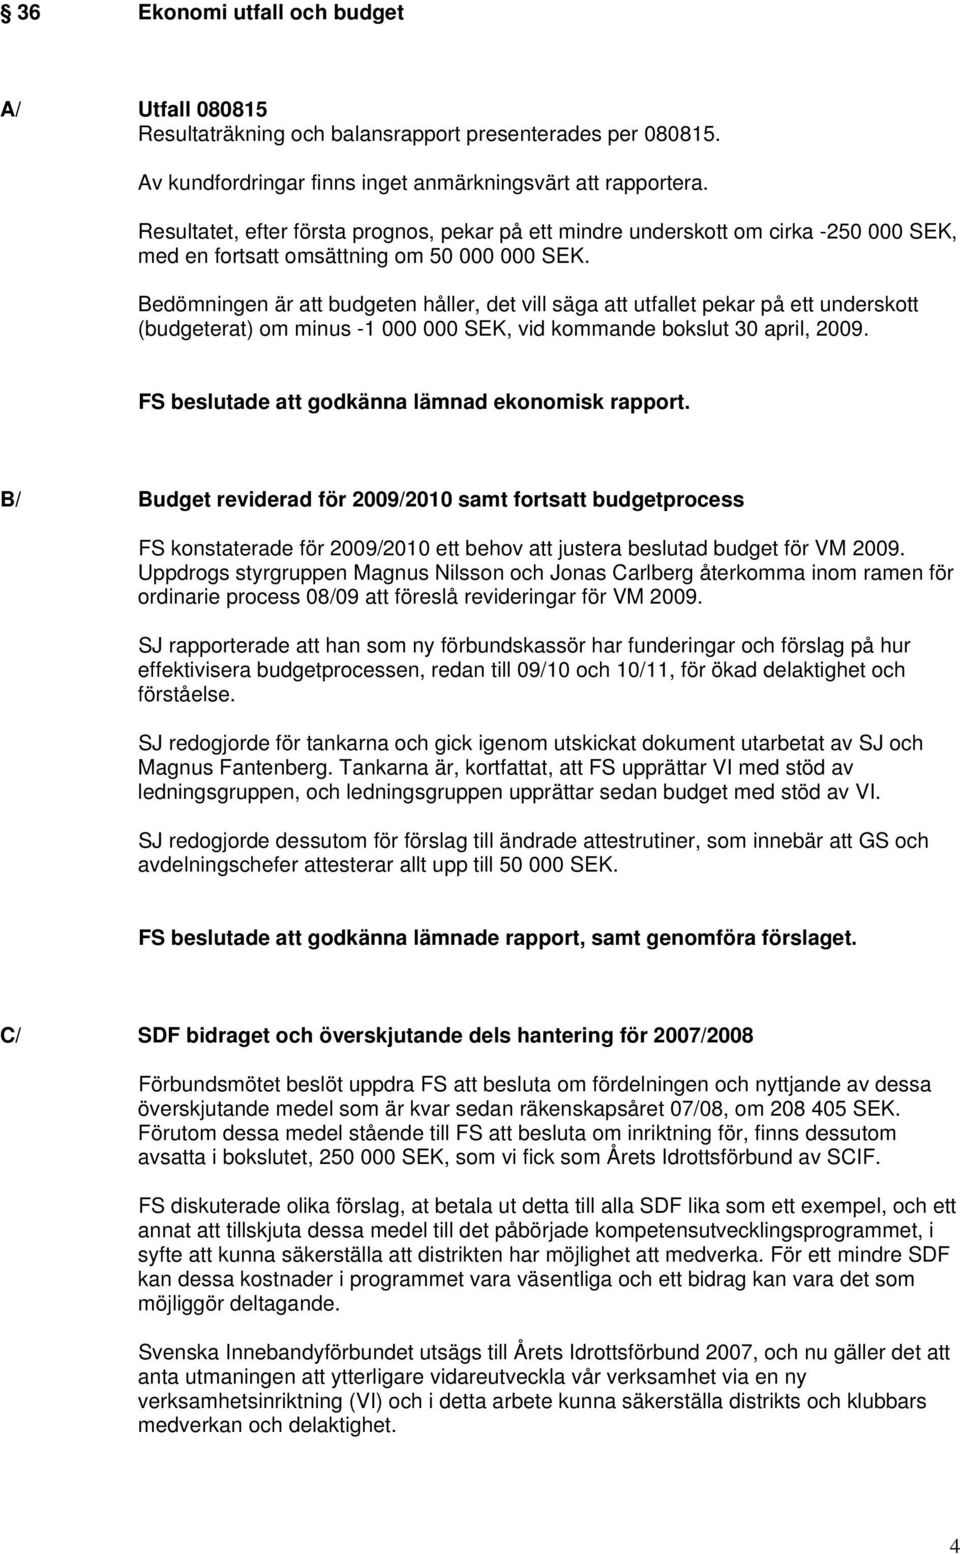 Bedömningen är att budgeten håller, det vill säga att utfallet pekar på ett underskott (budgeterat) om minus -1 000 000 SEK, vid kommande bokslut 30 april, 2009.